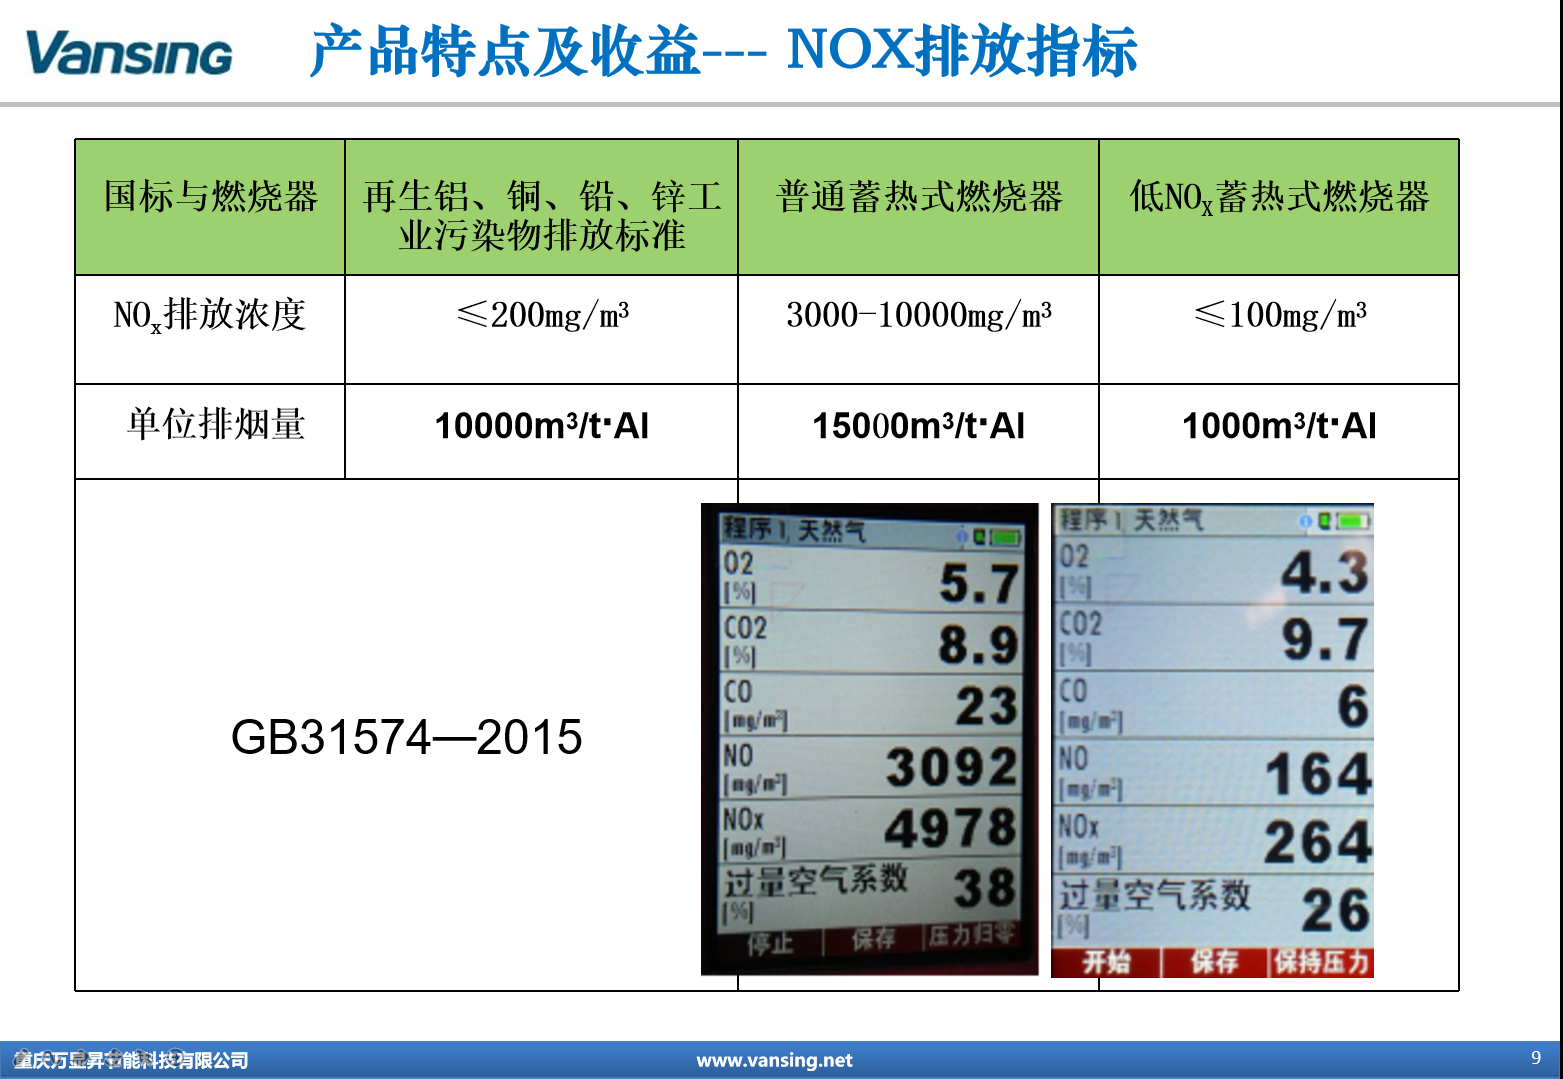 蓄热式燃烧系统-产品特征-NOX排放指标